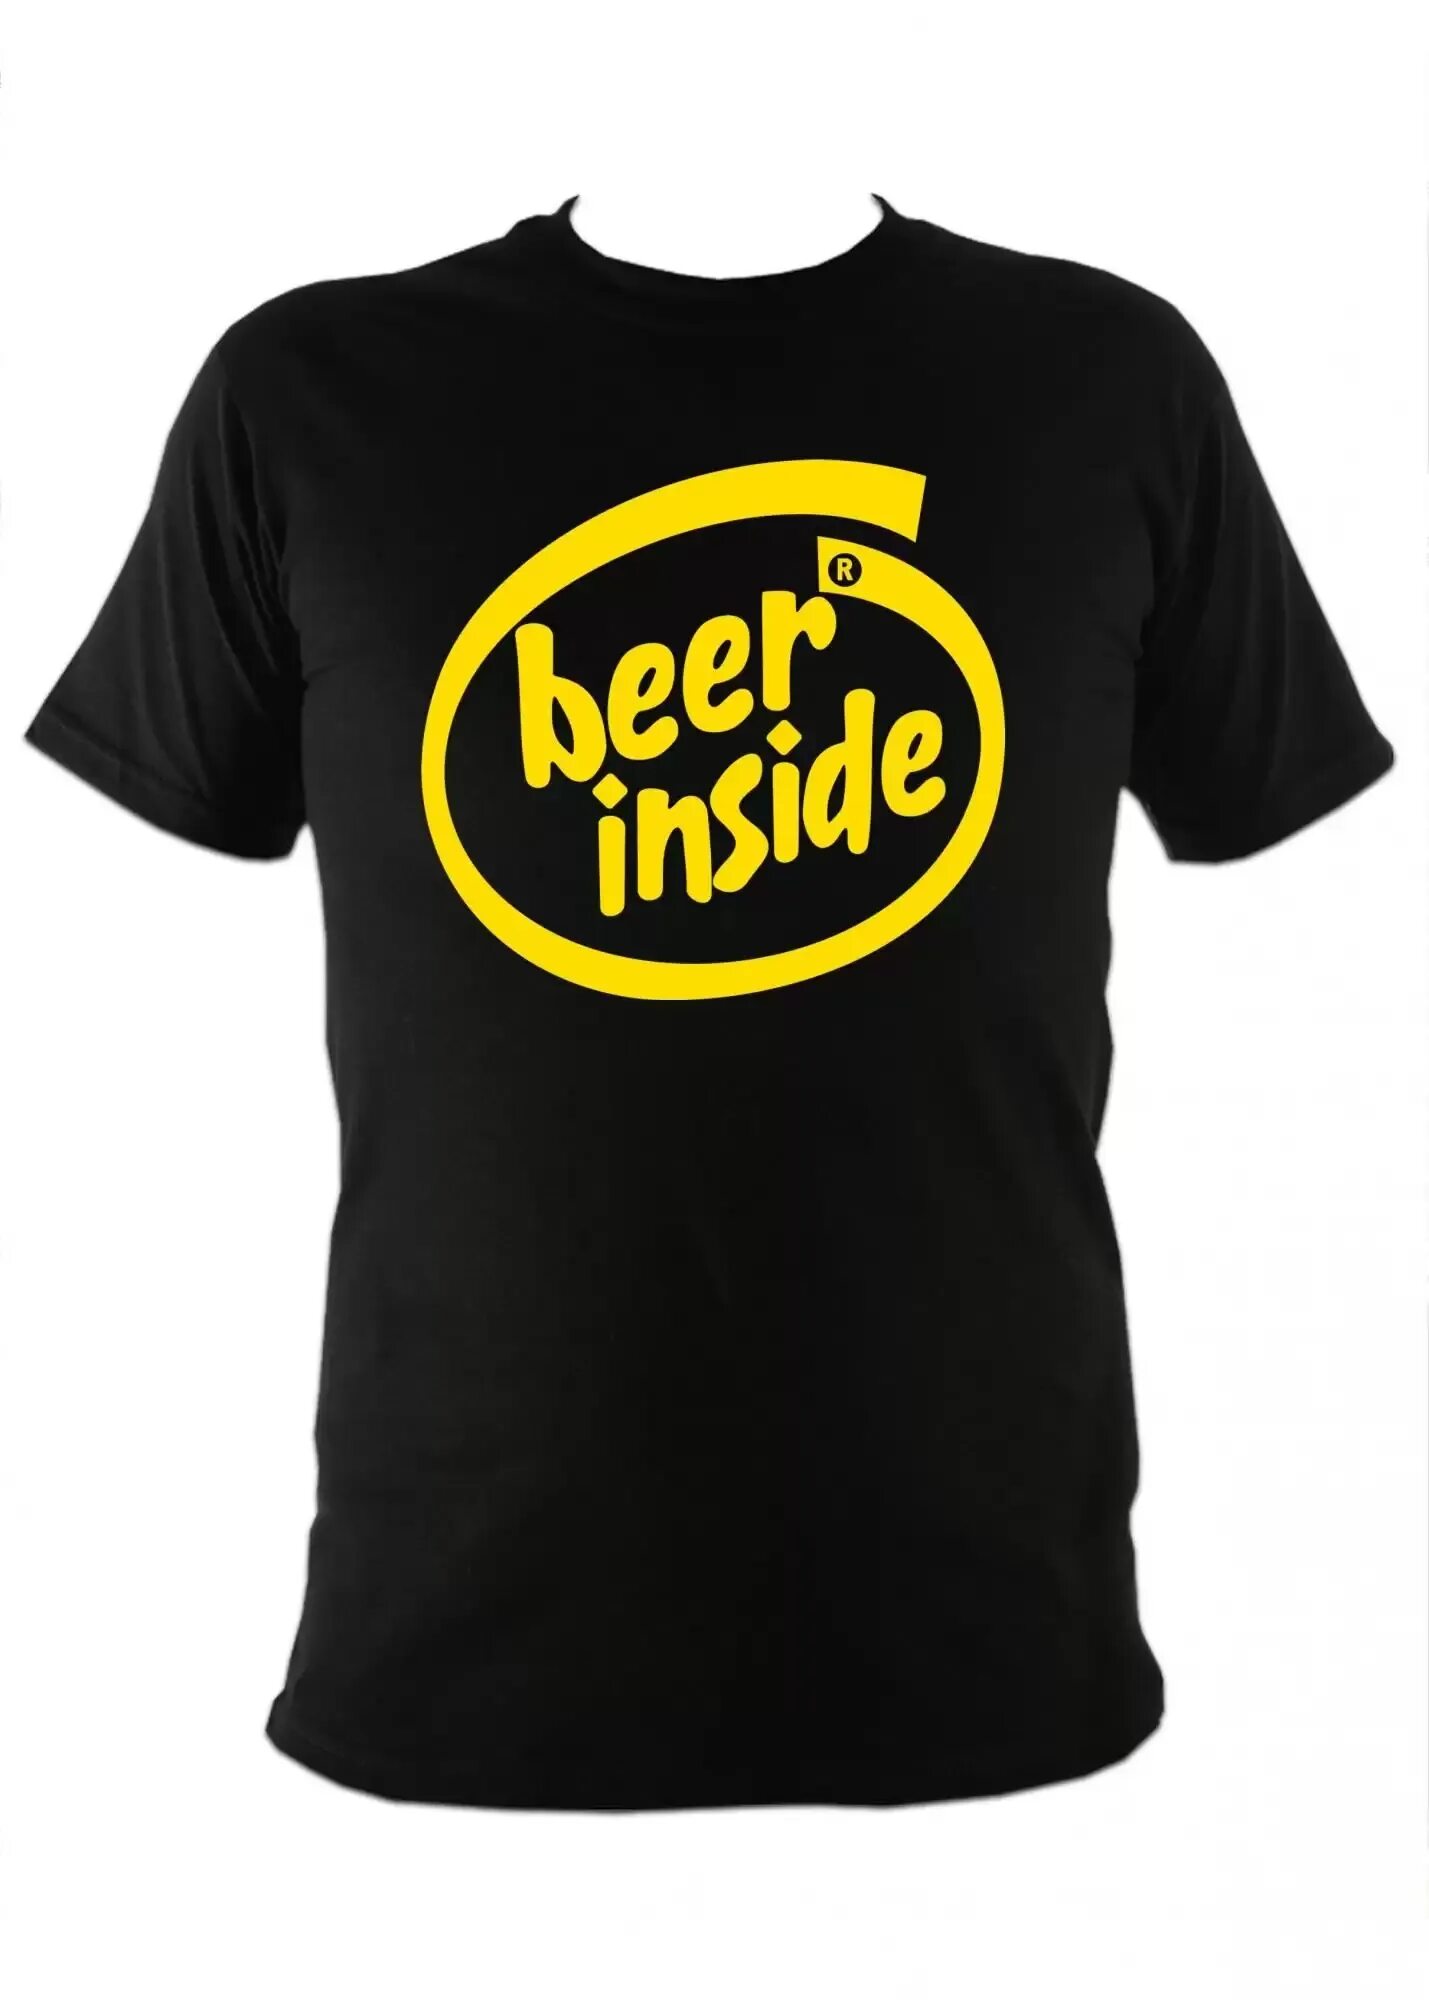 3 дай заказать. Футболка Beer. Прикольная майка пиво. Футболки с пивом прикольные. Beer inside футболка.